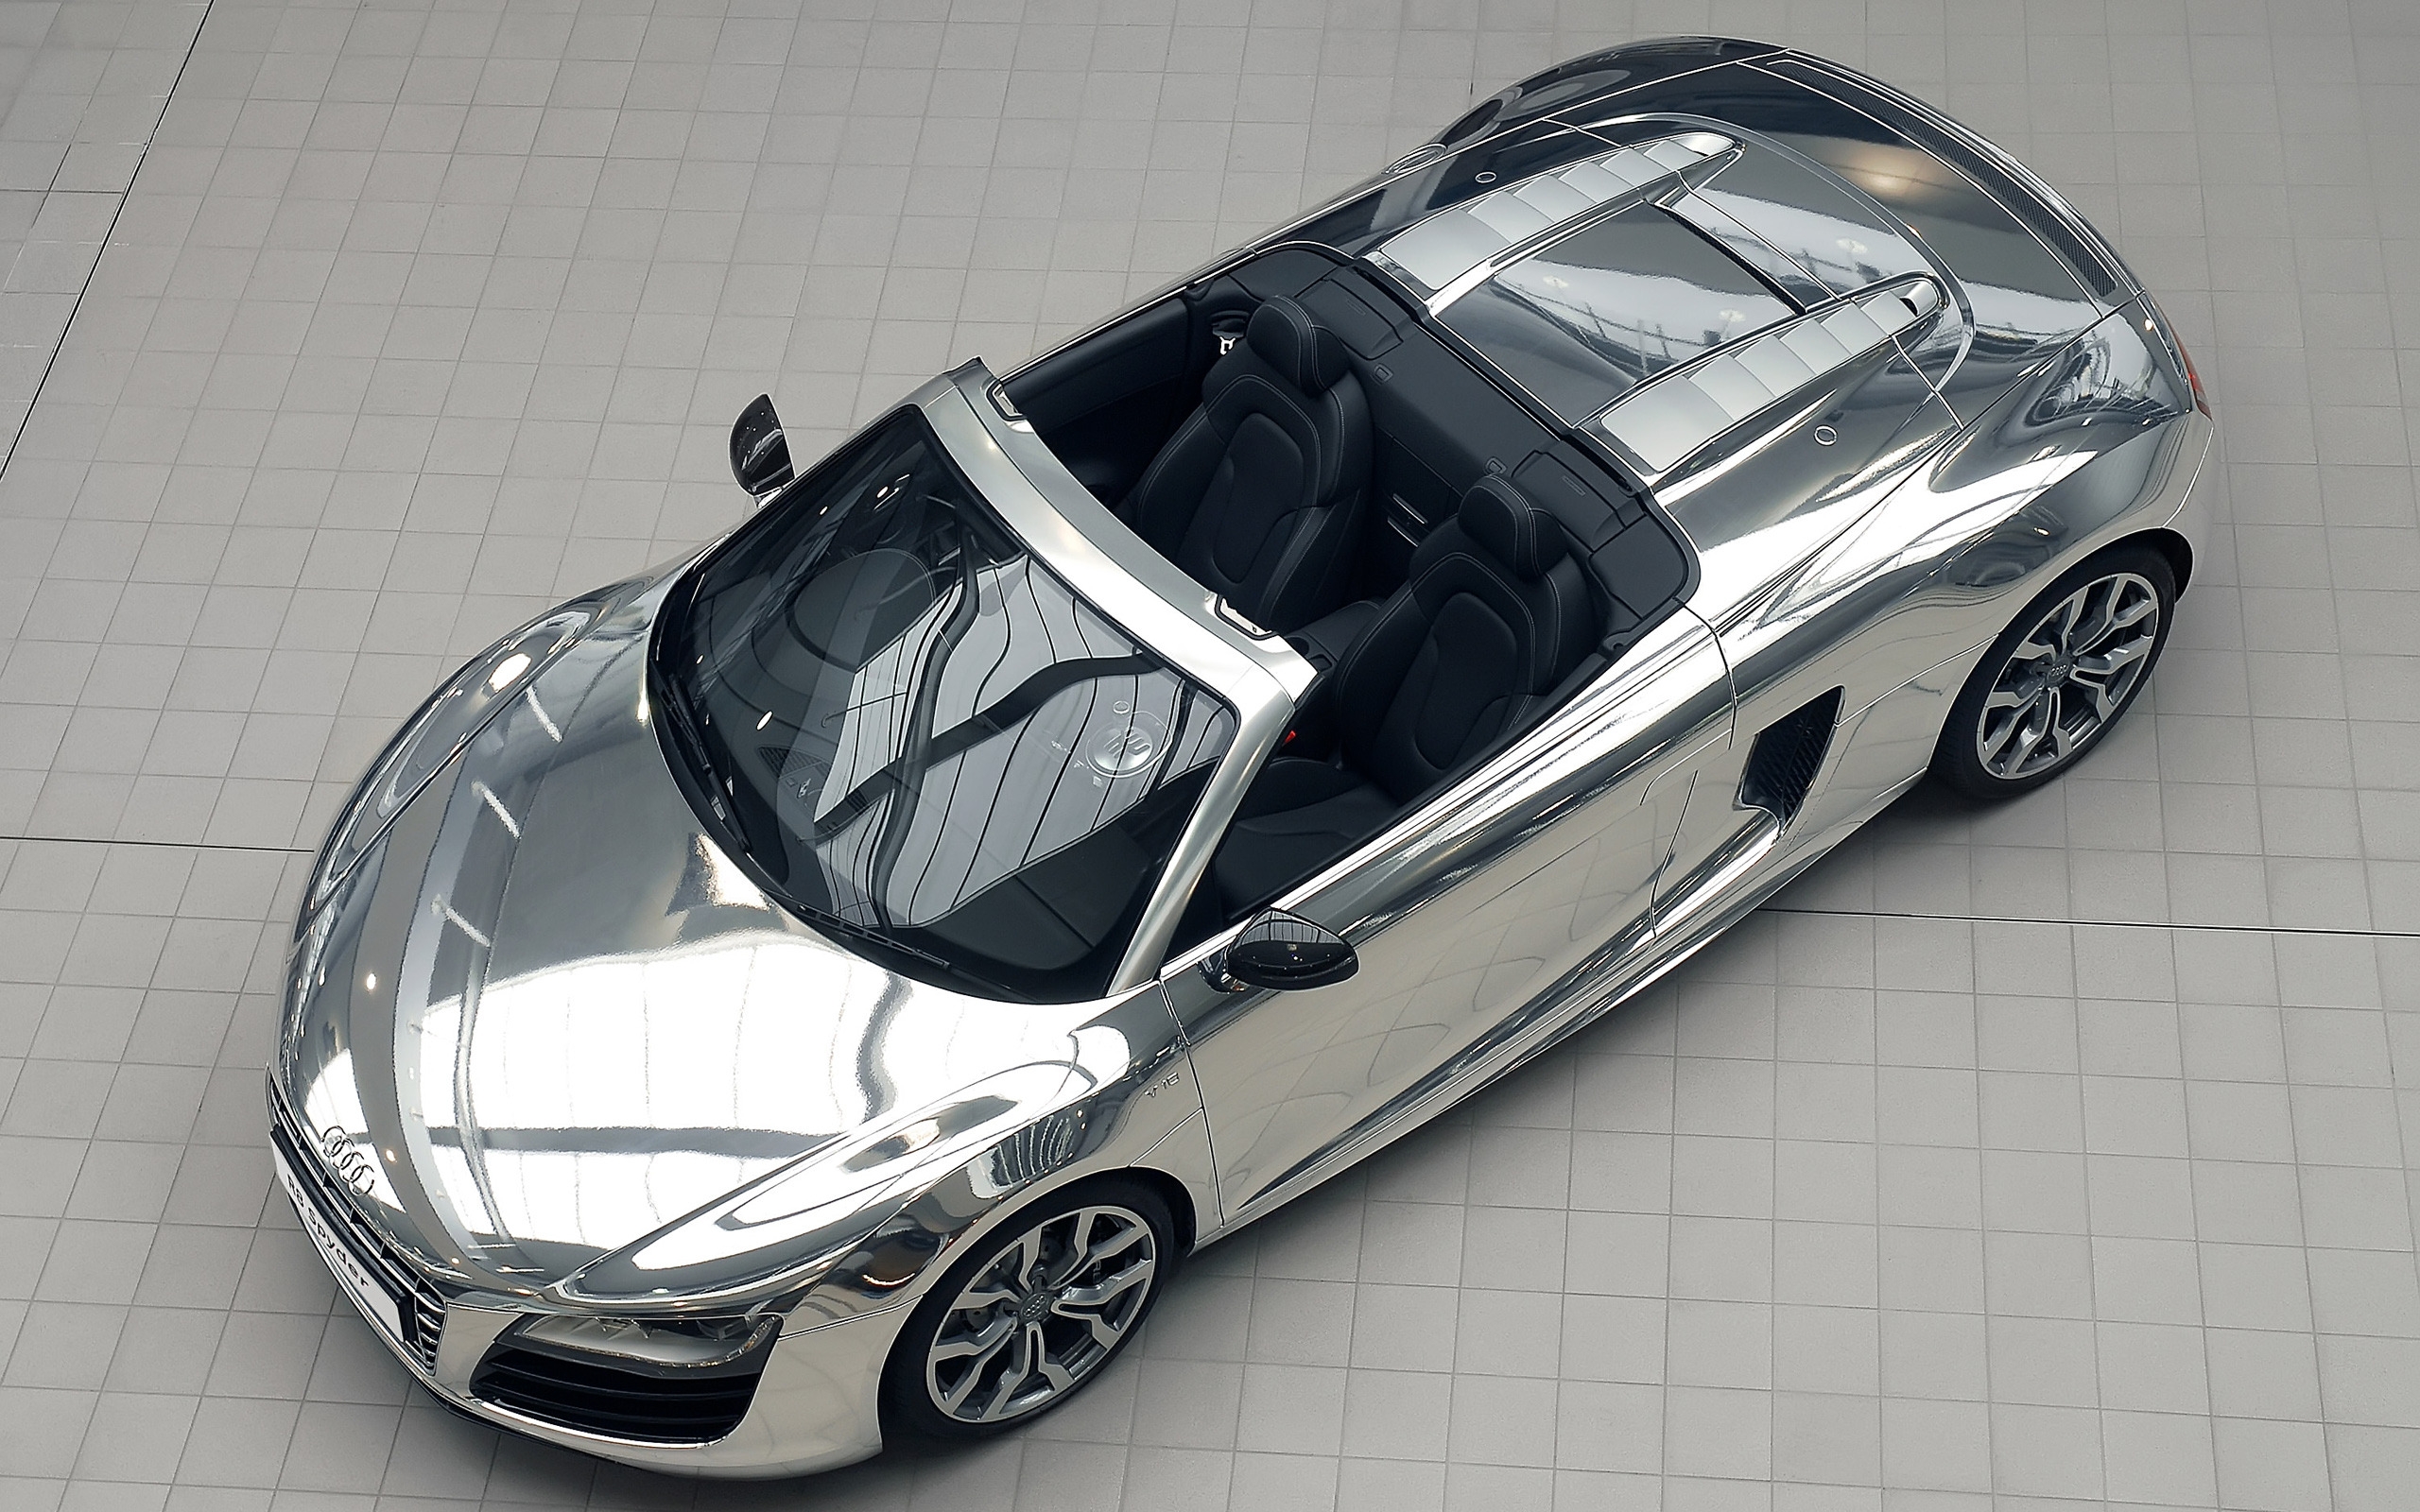 Audi R8 V10 Spyder Chrome for 2560 x 1600 widescreen resolution